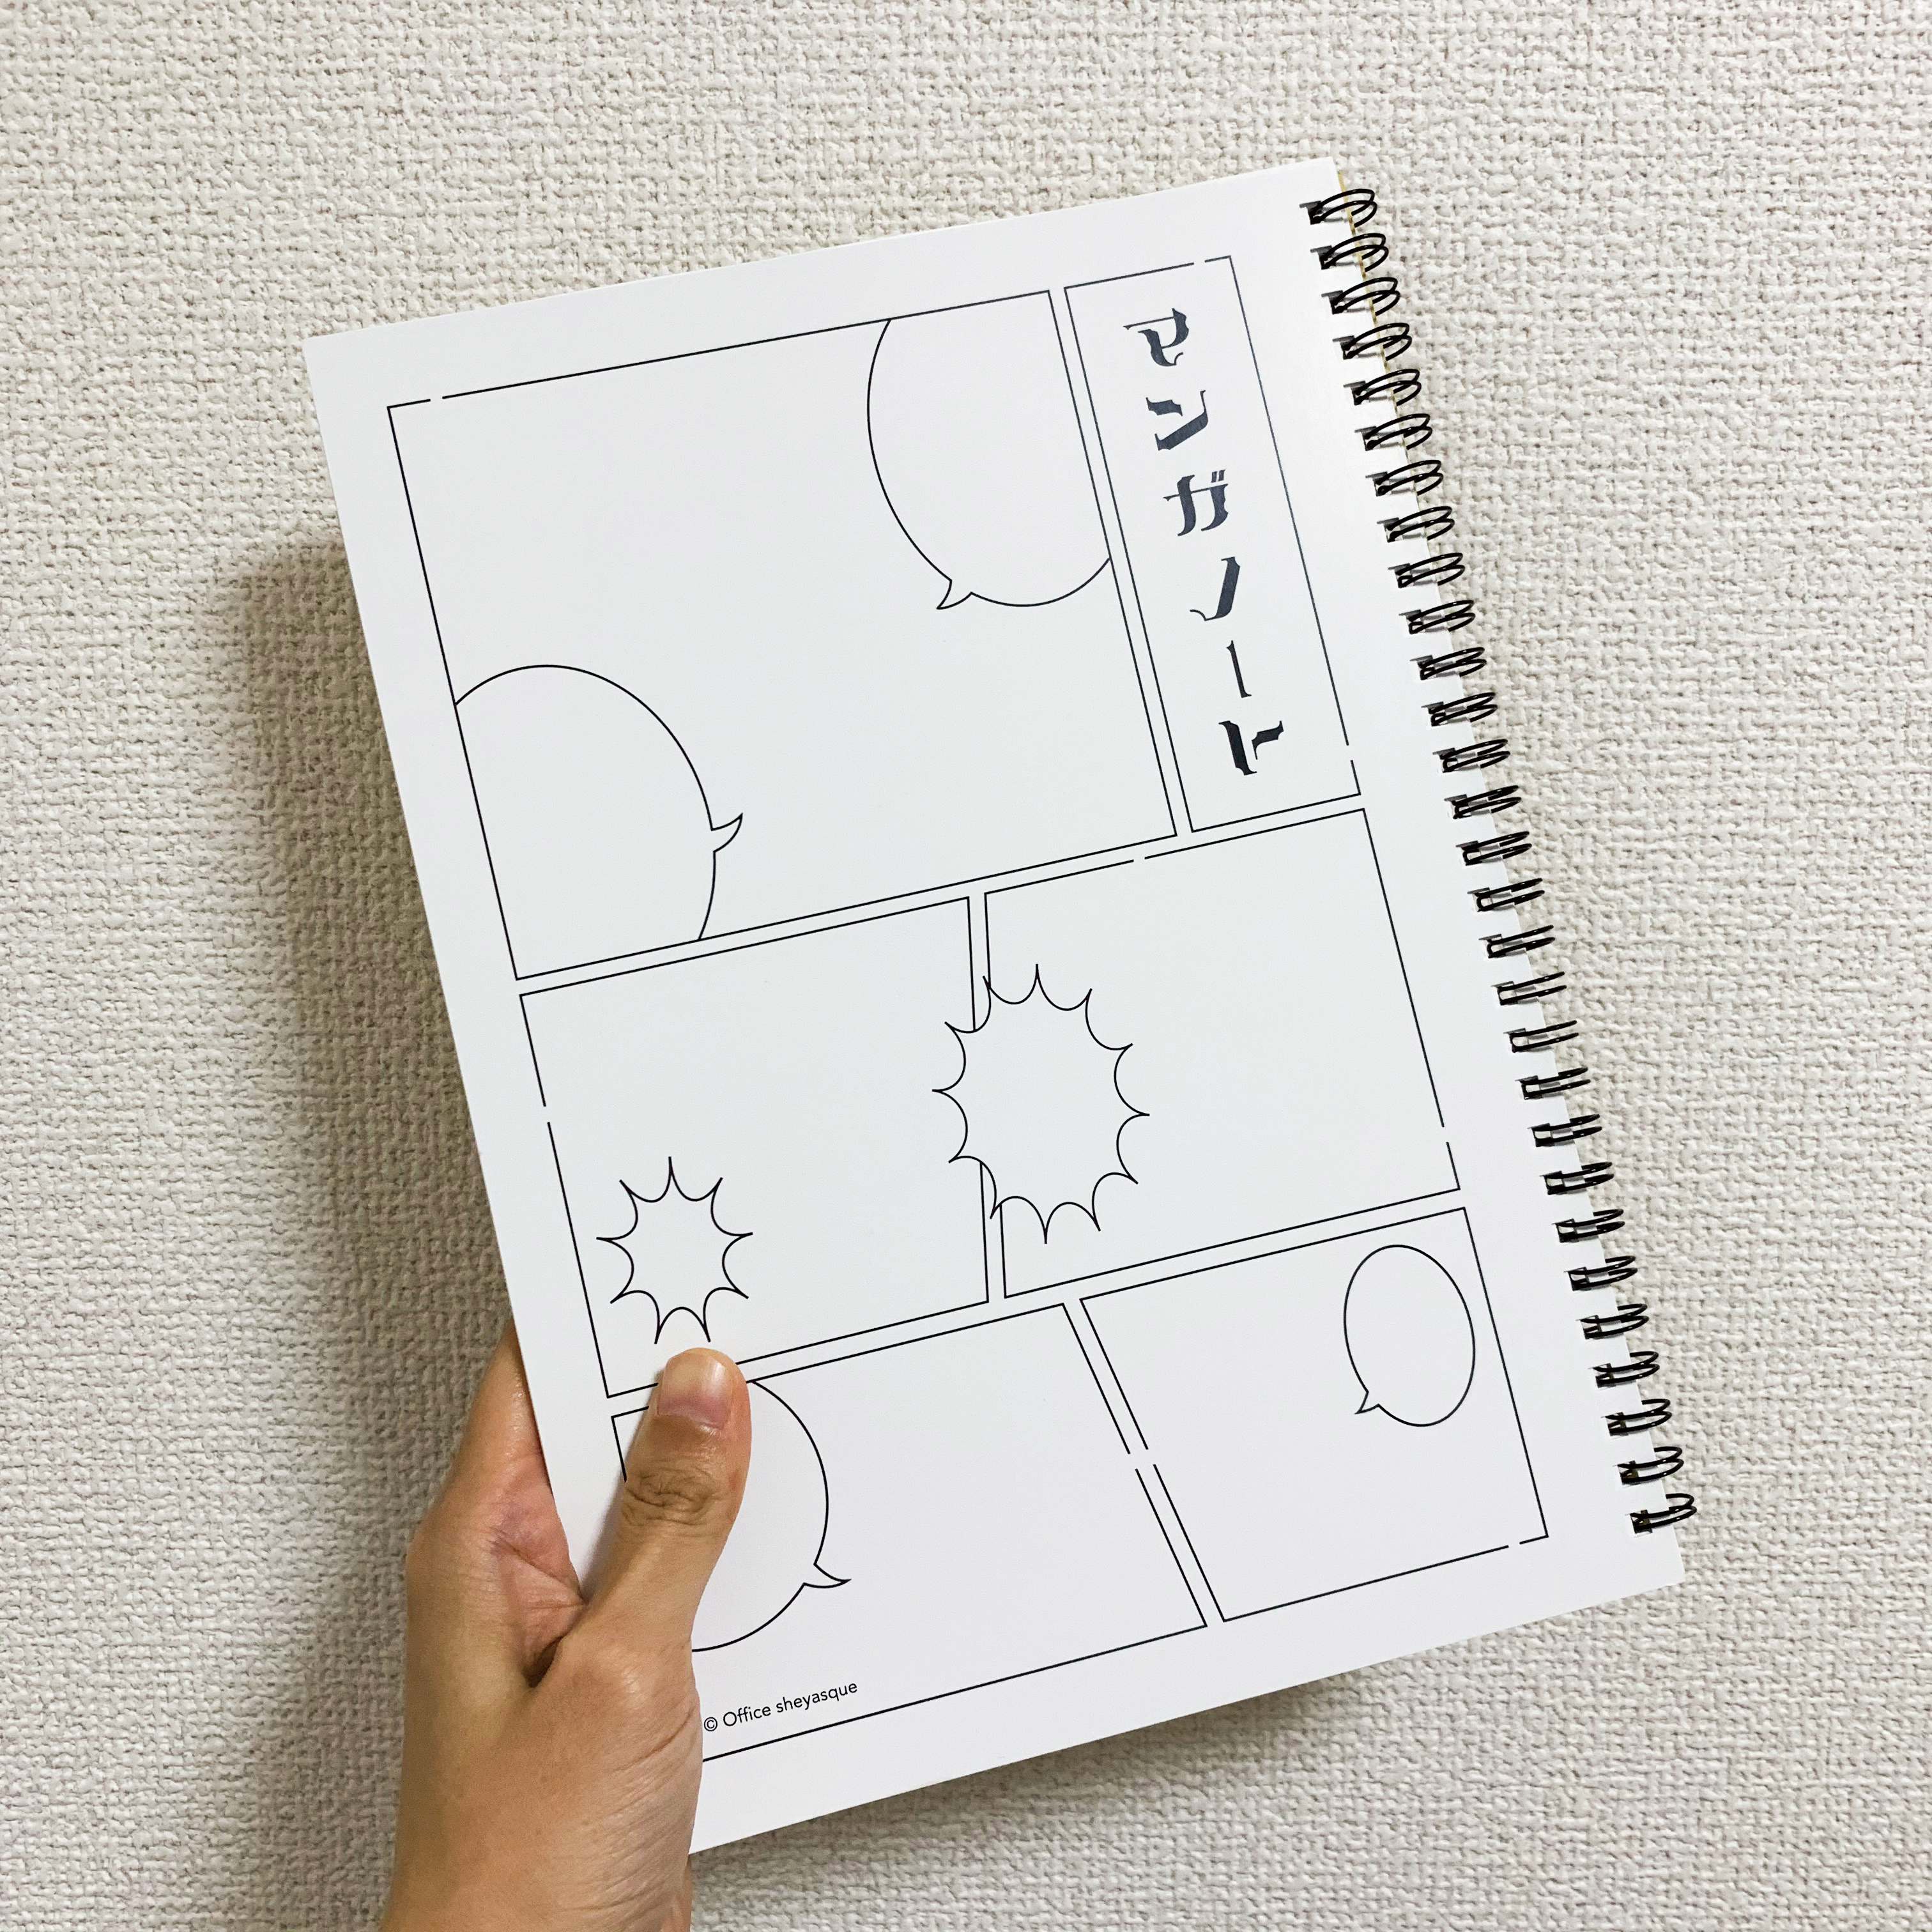 夏休み応援企画 絵やマンガを描くのが好きなお子様にぴったり 日本初のマンガで日記が描ける日記帳 マンガノート が8月31日までの期間限定で Off Newscast